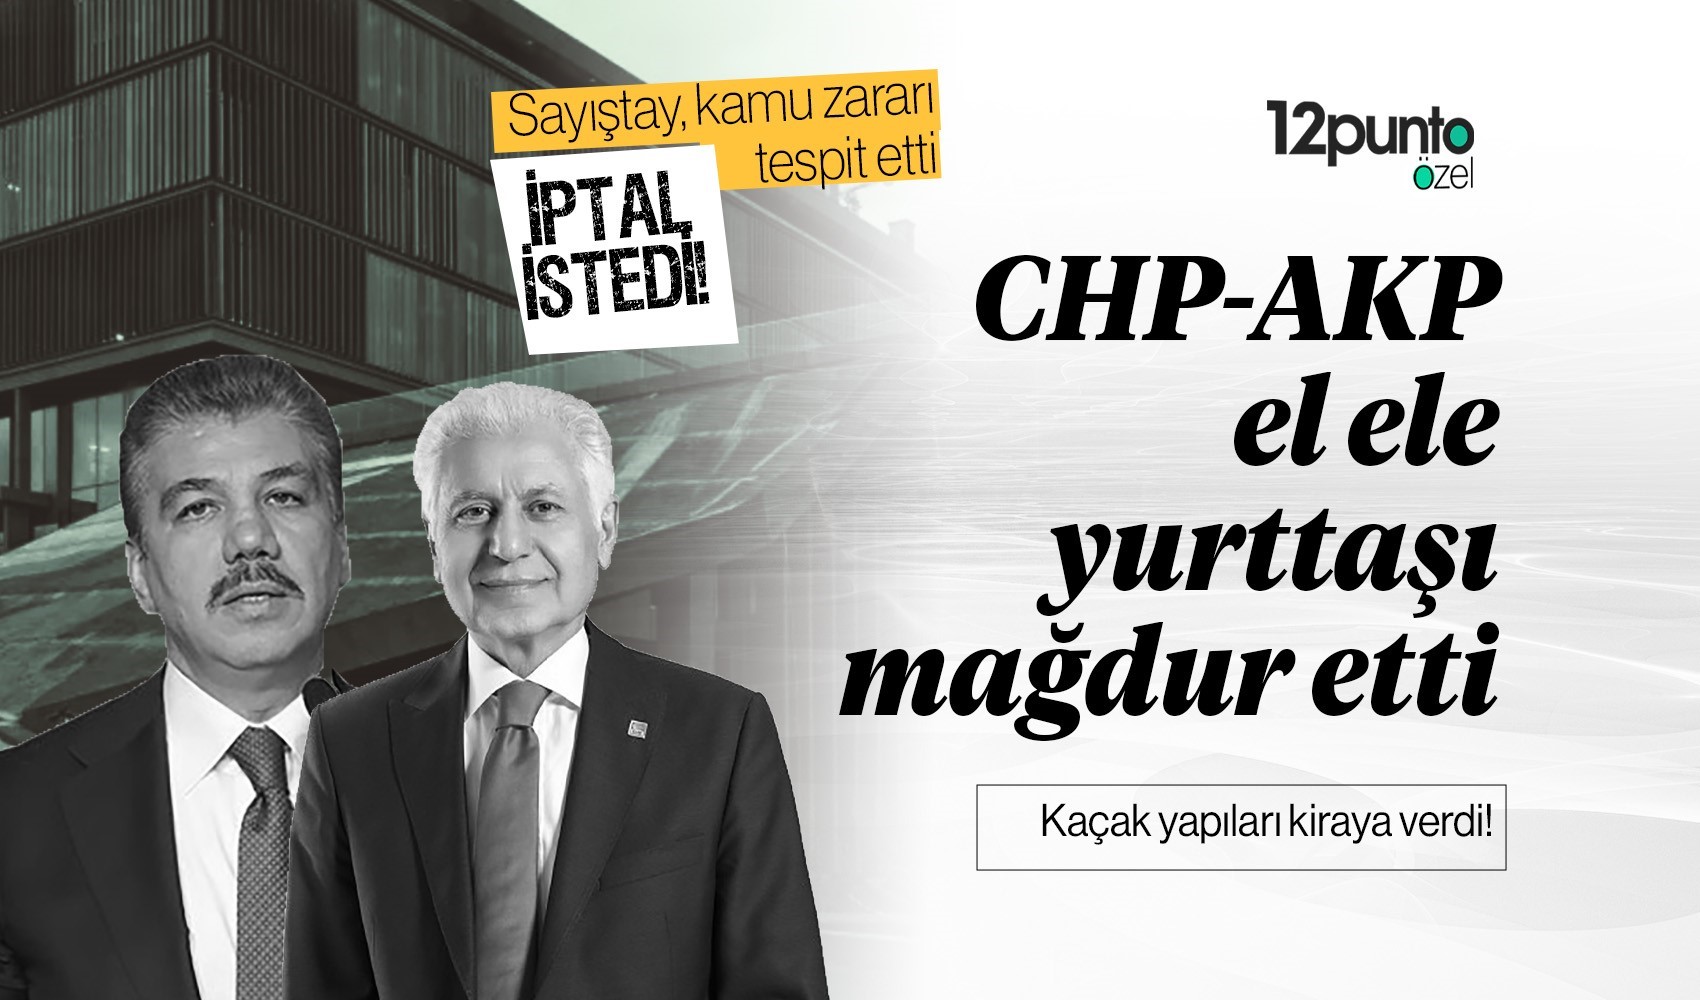 CHP'li Şişli Belediyesi, AKP'li Cüneyt Yüksel'in ailesine ihale kıyağı yapmıştı, olan yine yurttaşa oldu